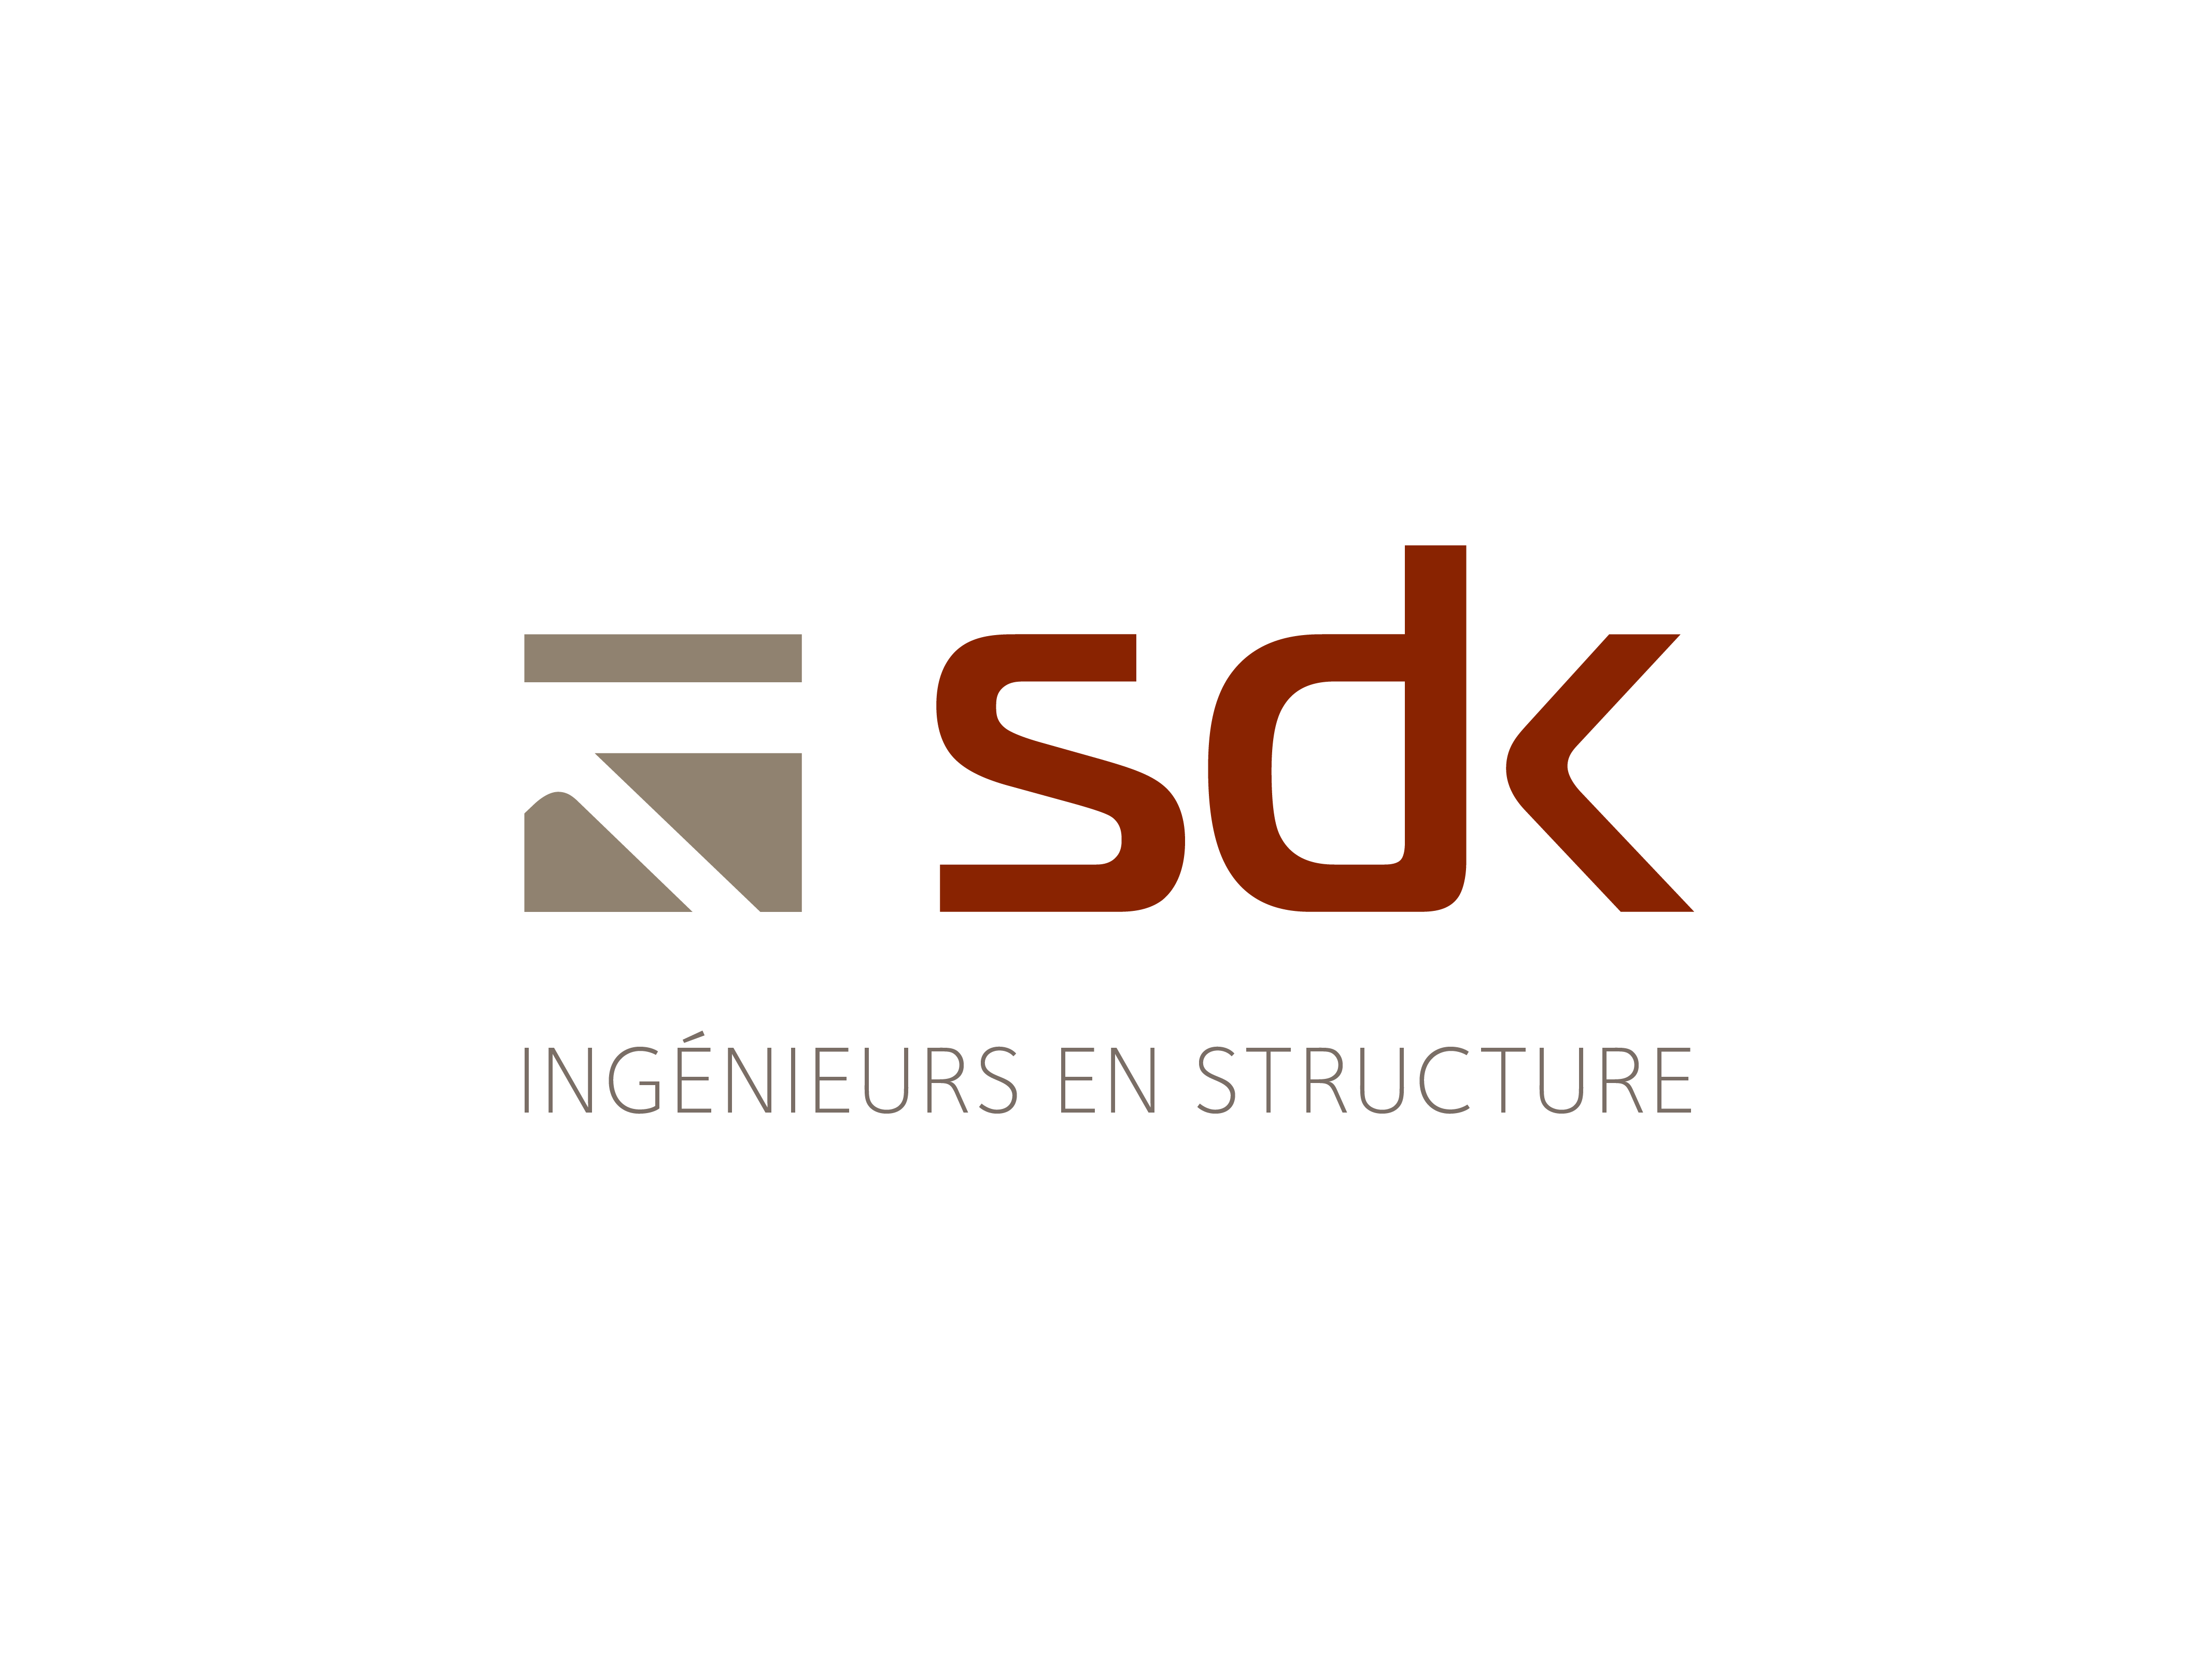 SDK Structure